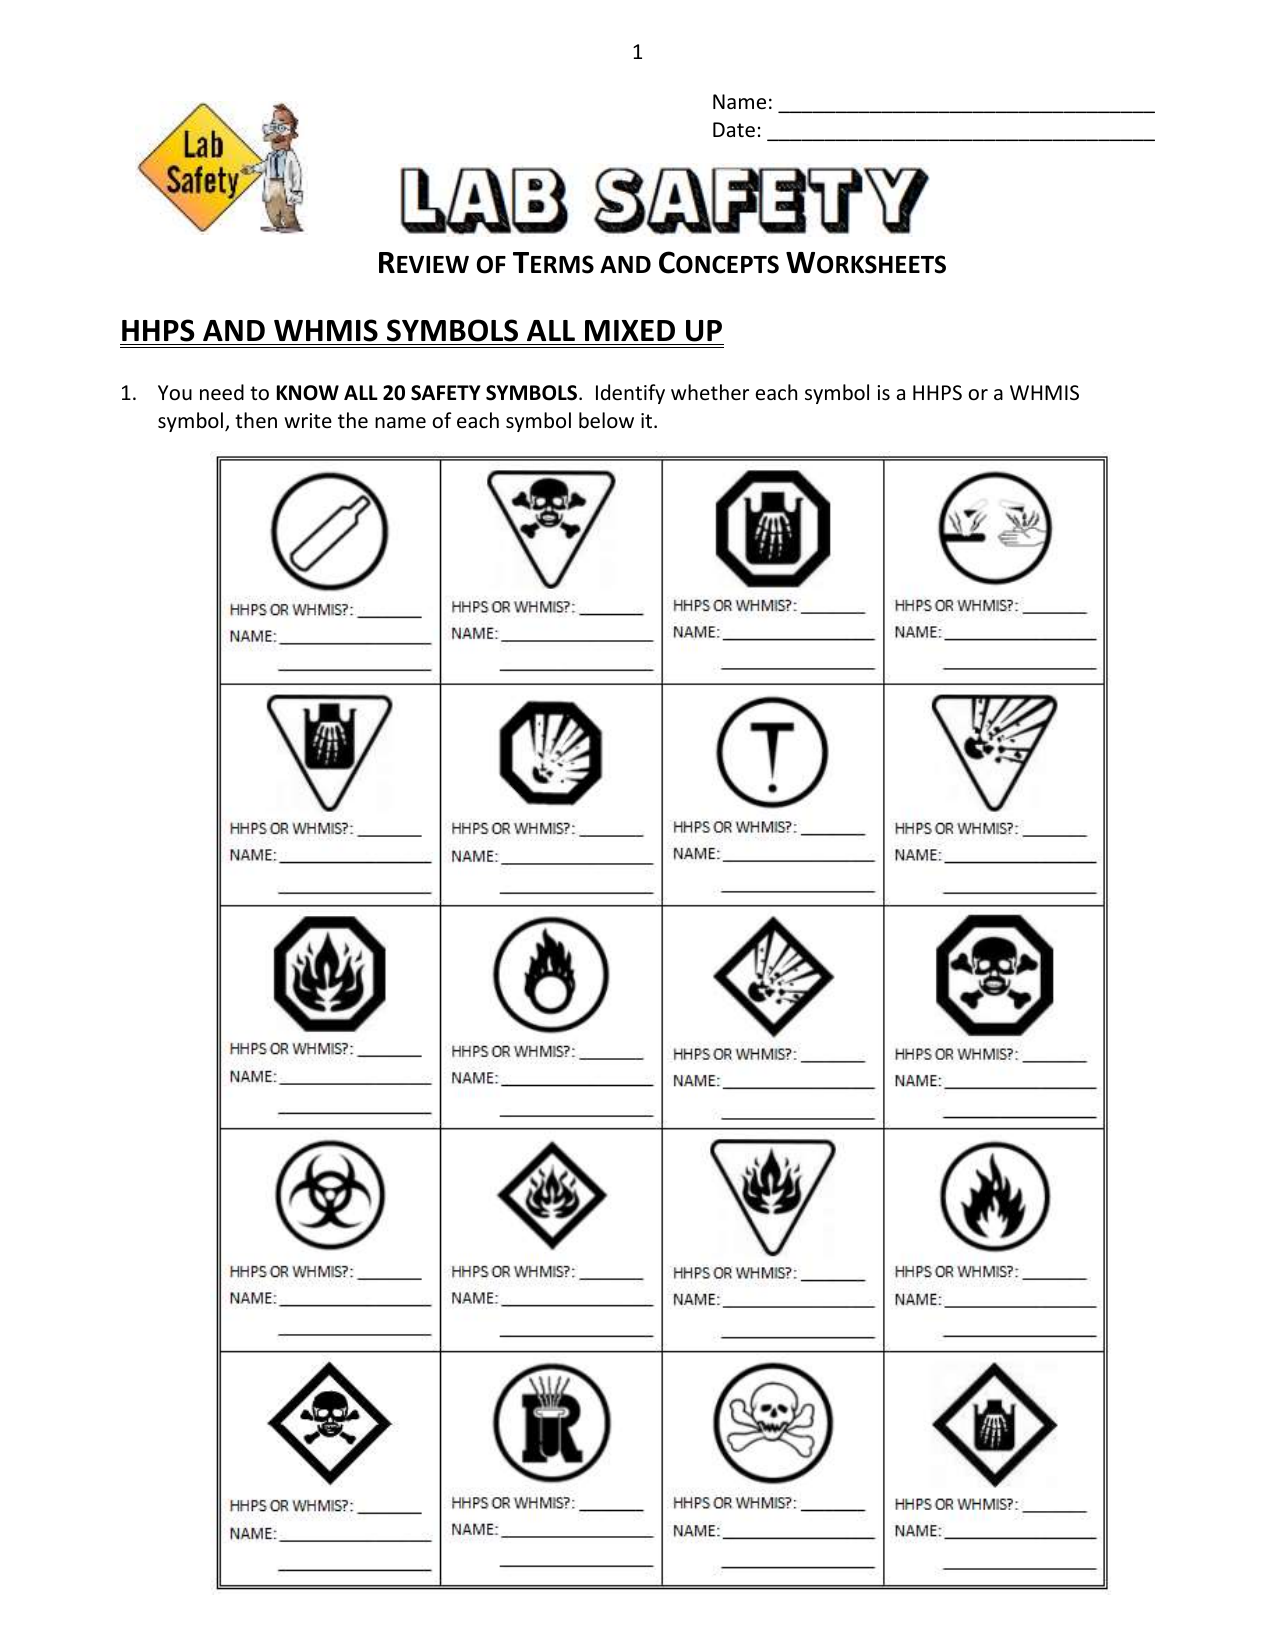 Lab Safety - Review Worksheet For Lab Safety Symbols Worksheet